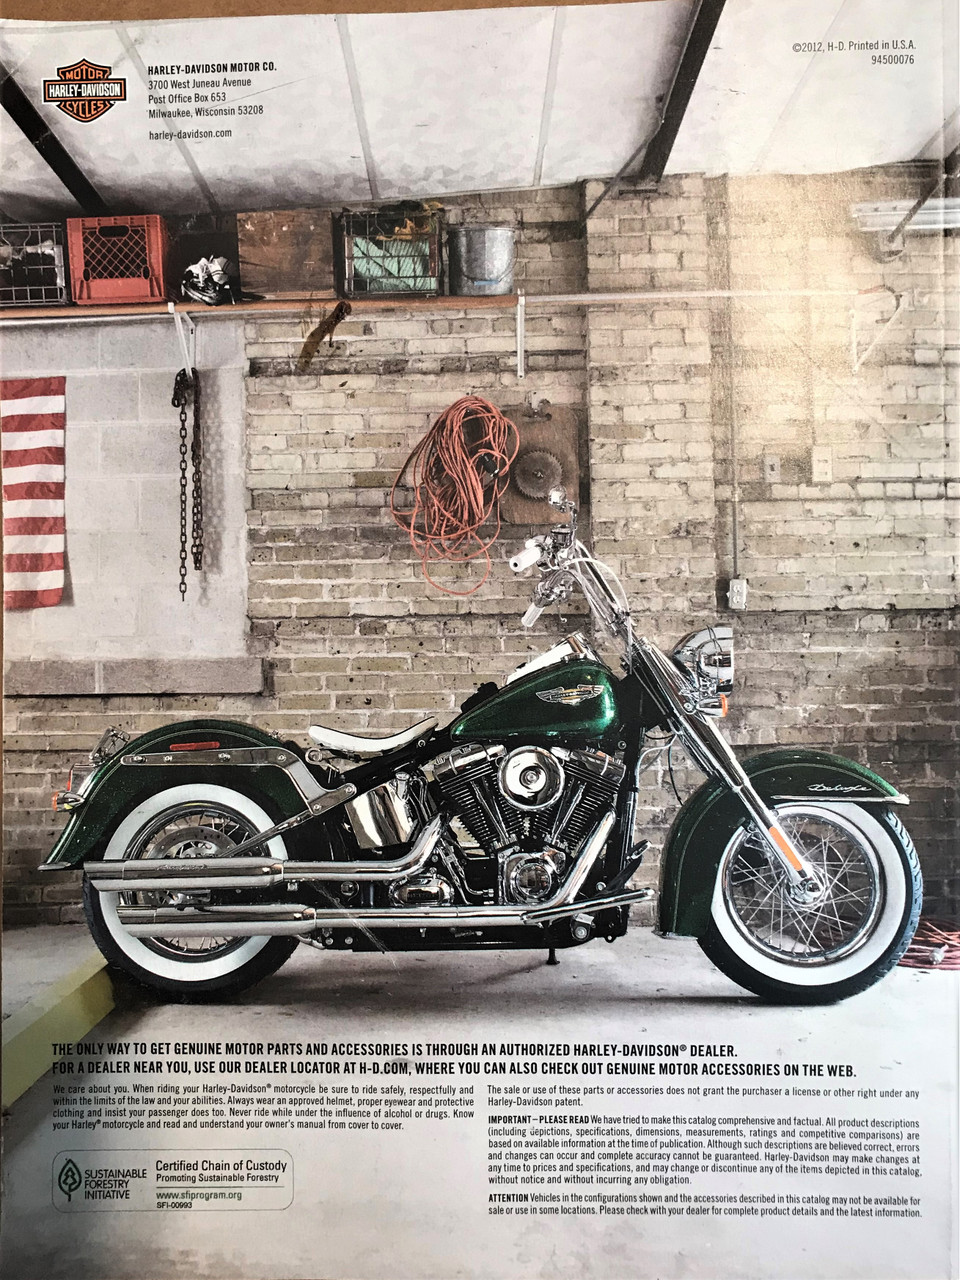 Harley Davidson 2013 Genuine Motor Part Accessories Catalog